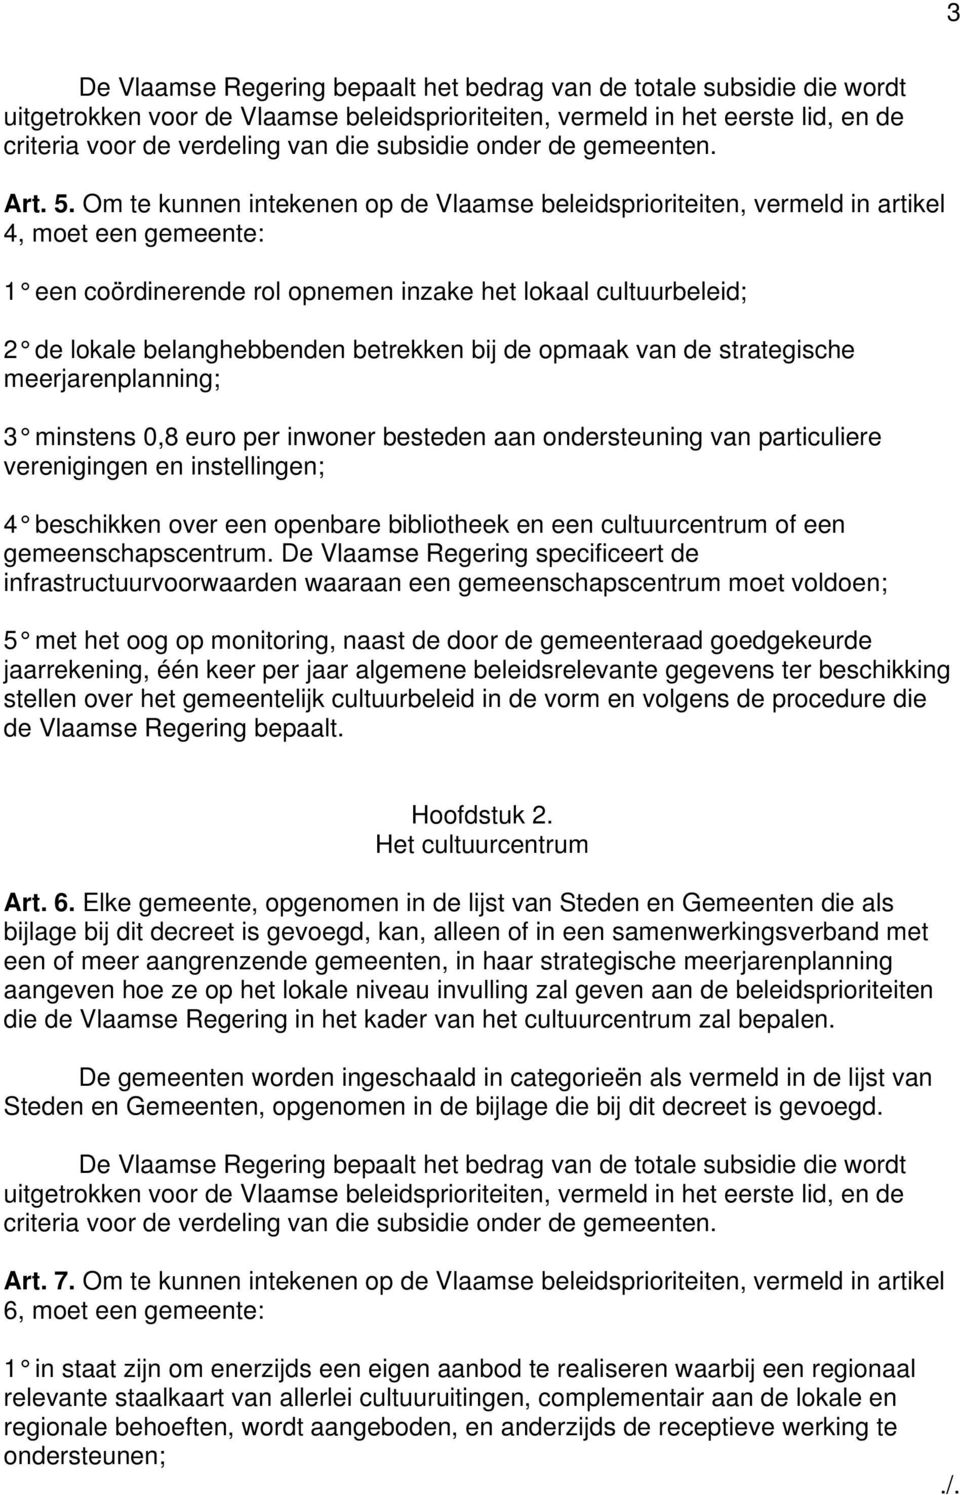 Om te kunnen intekenen op de Vlaamse beleidsprioriteiten, vermeld in artikel 4, moet een gemeente: 1 een coördinerende rol opnemen inzake het lokaal cultuurbeleid; 2 de lokale belanghebbenden